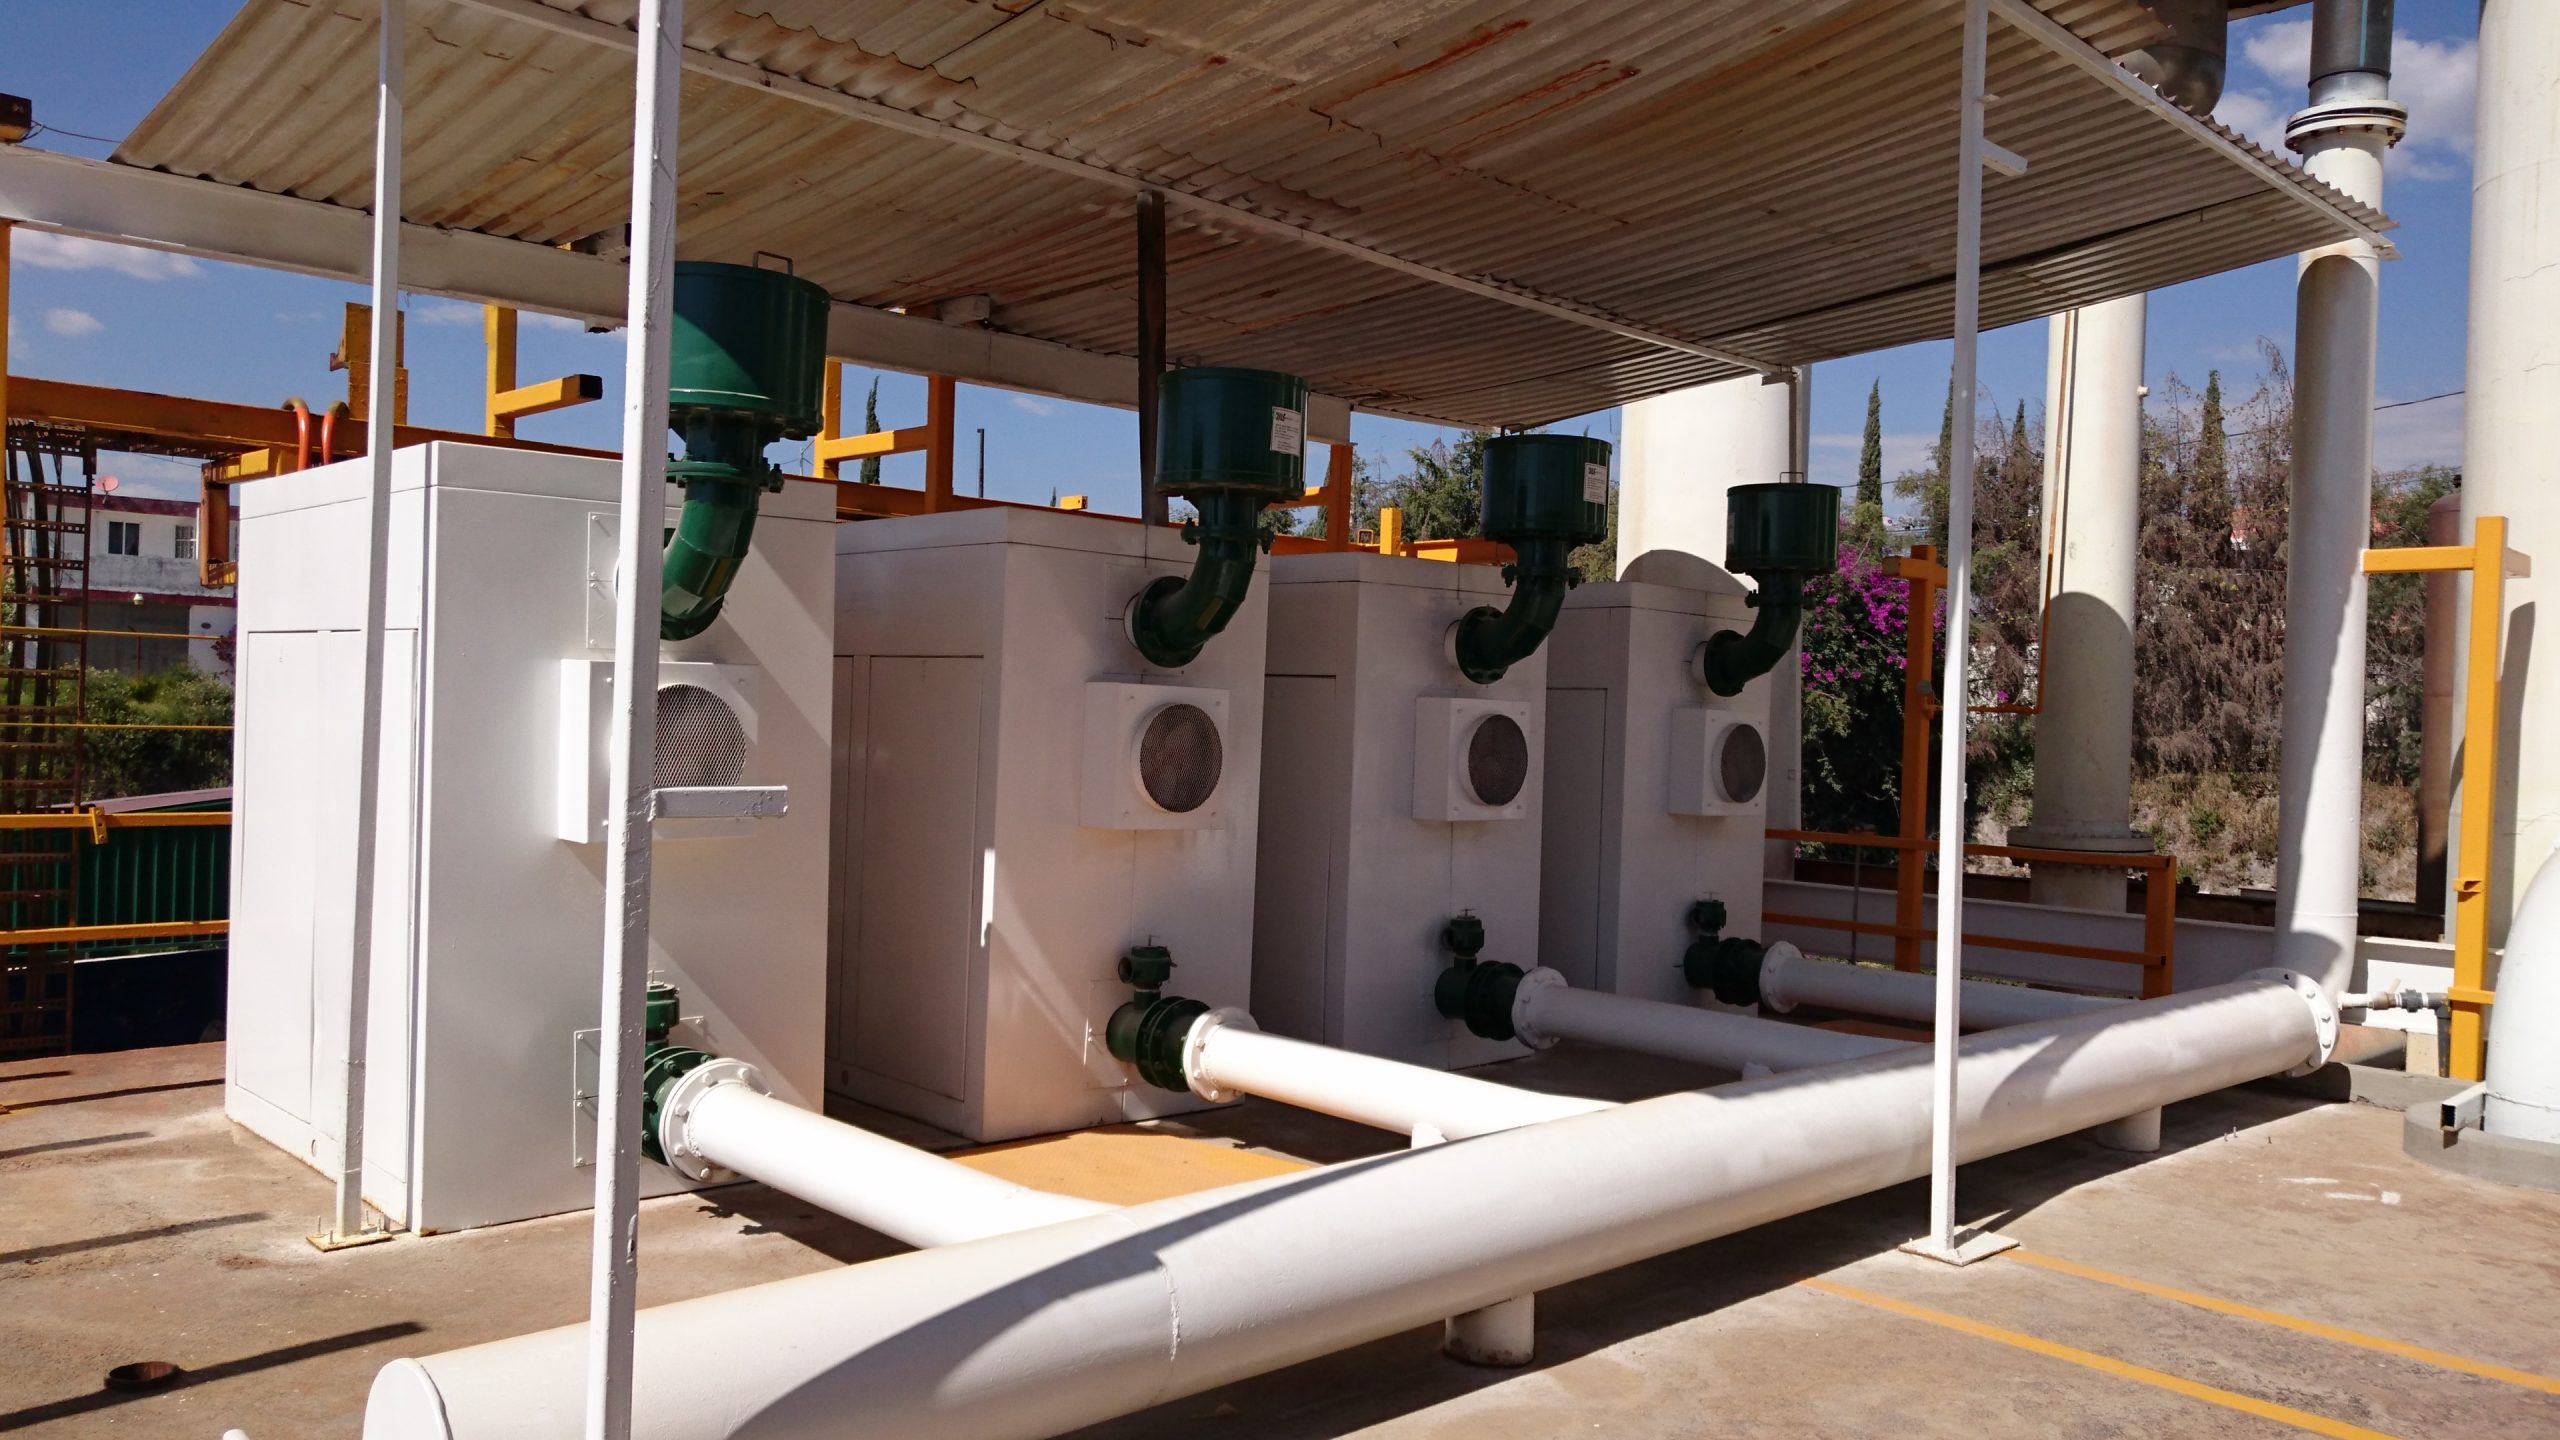 Agua de Puebla dará mantenimiento a la Planta Potabilizadora de Agua Sulfurosa San Felipe